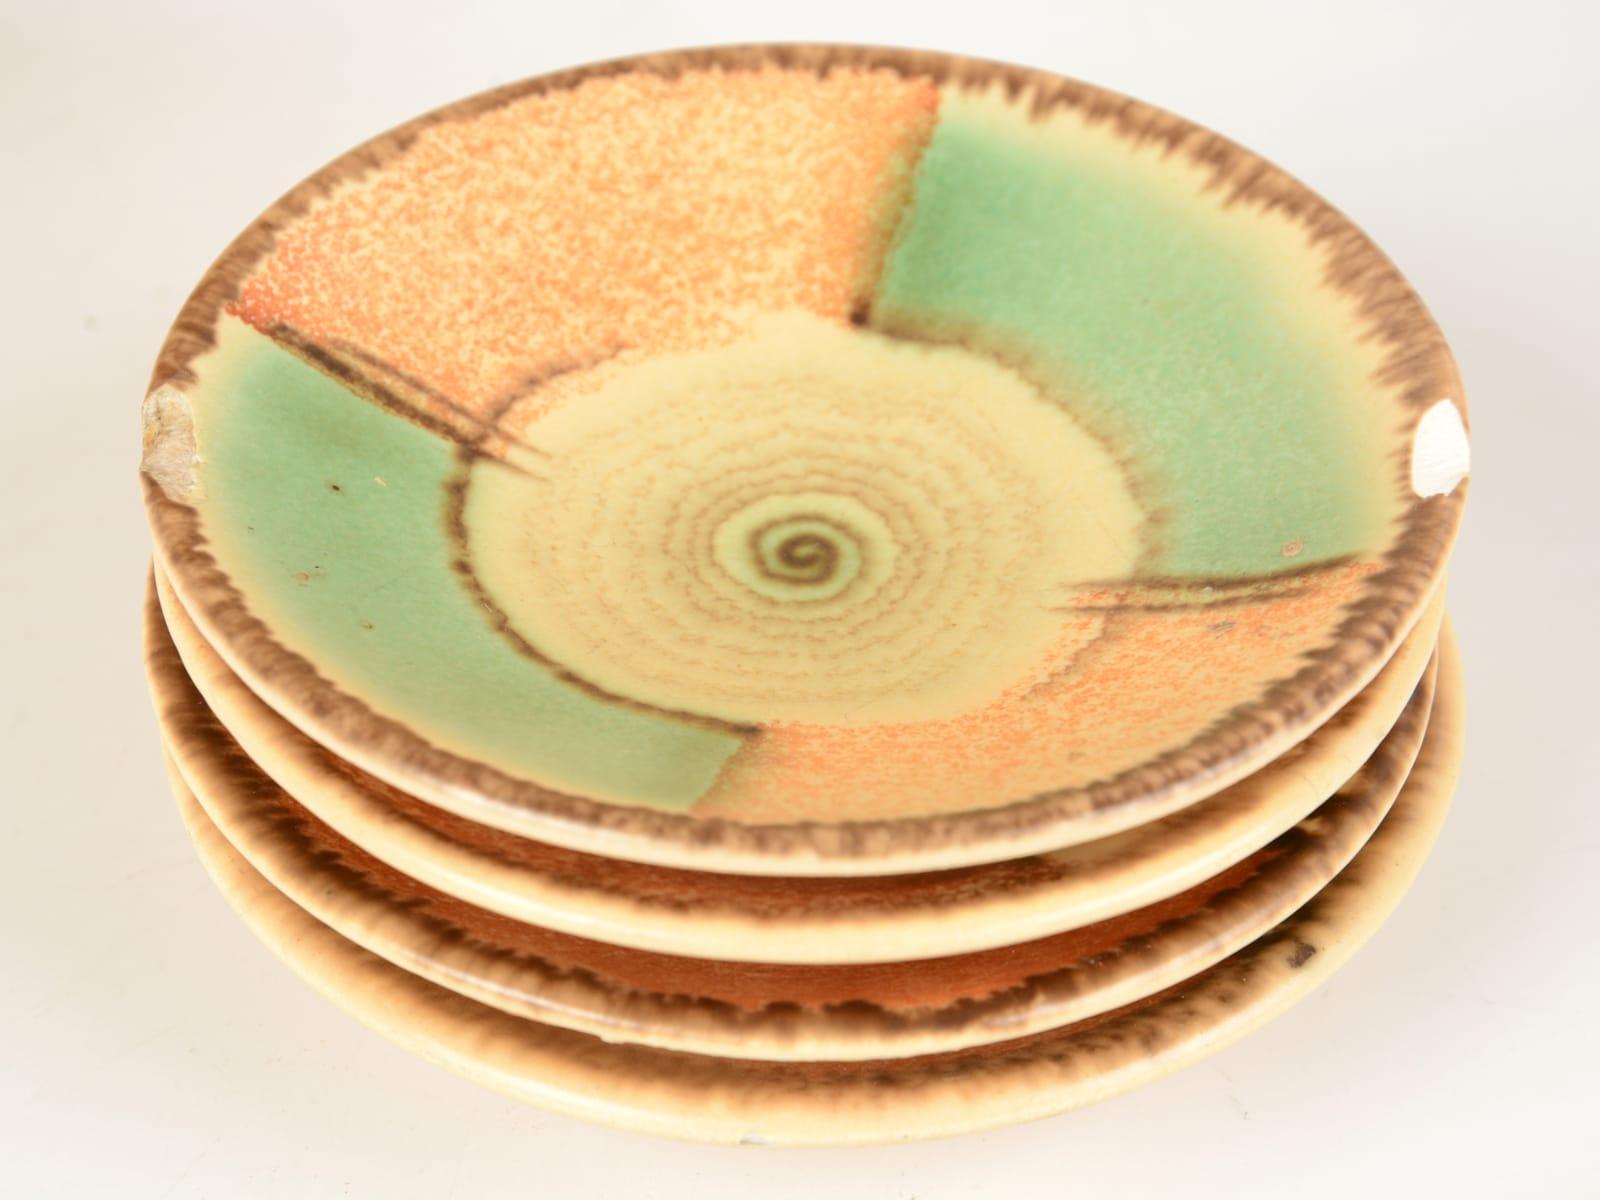 vintage art deco plates